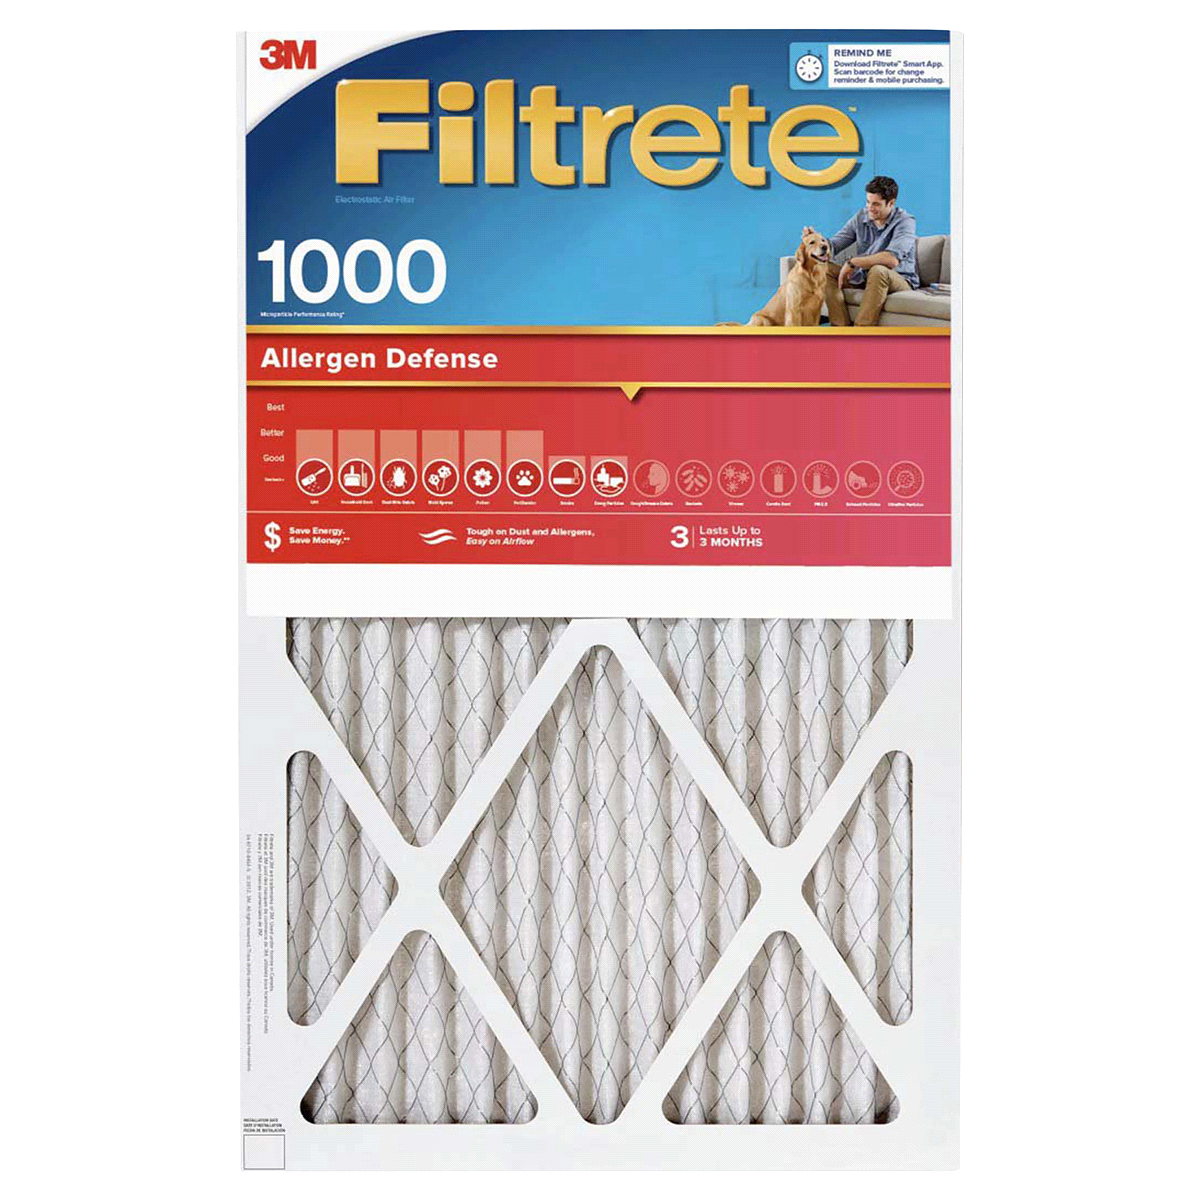 slide 1 of 29, 3M Air Filter, Electrostatic, Allergen Defense 1000, 1 ct